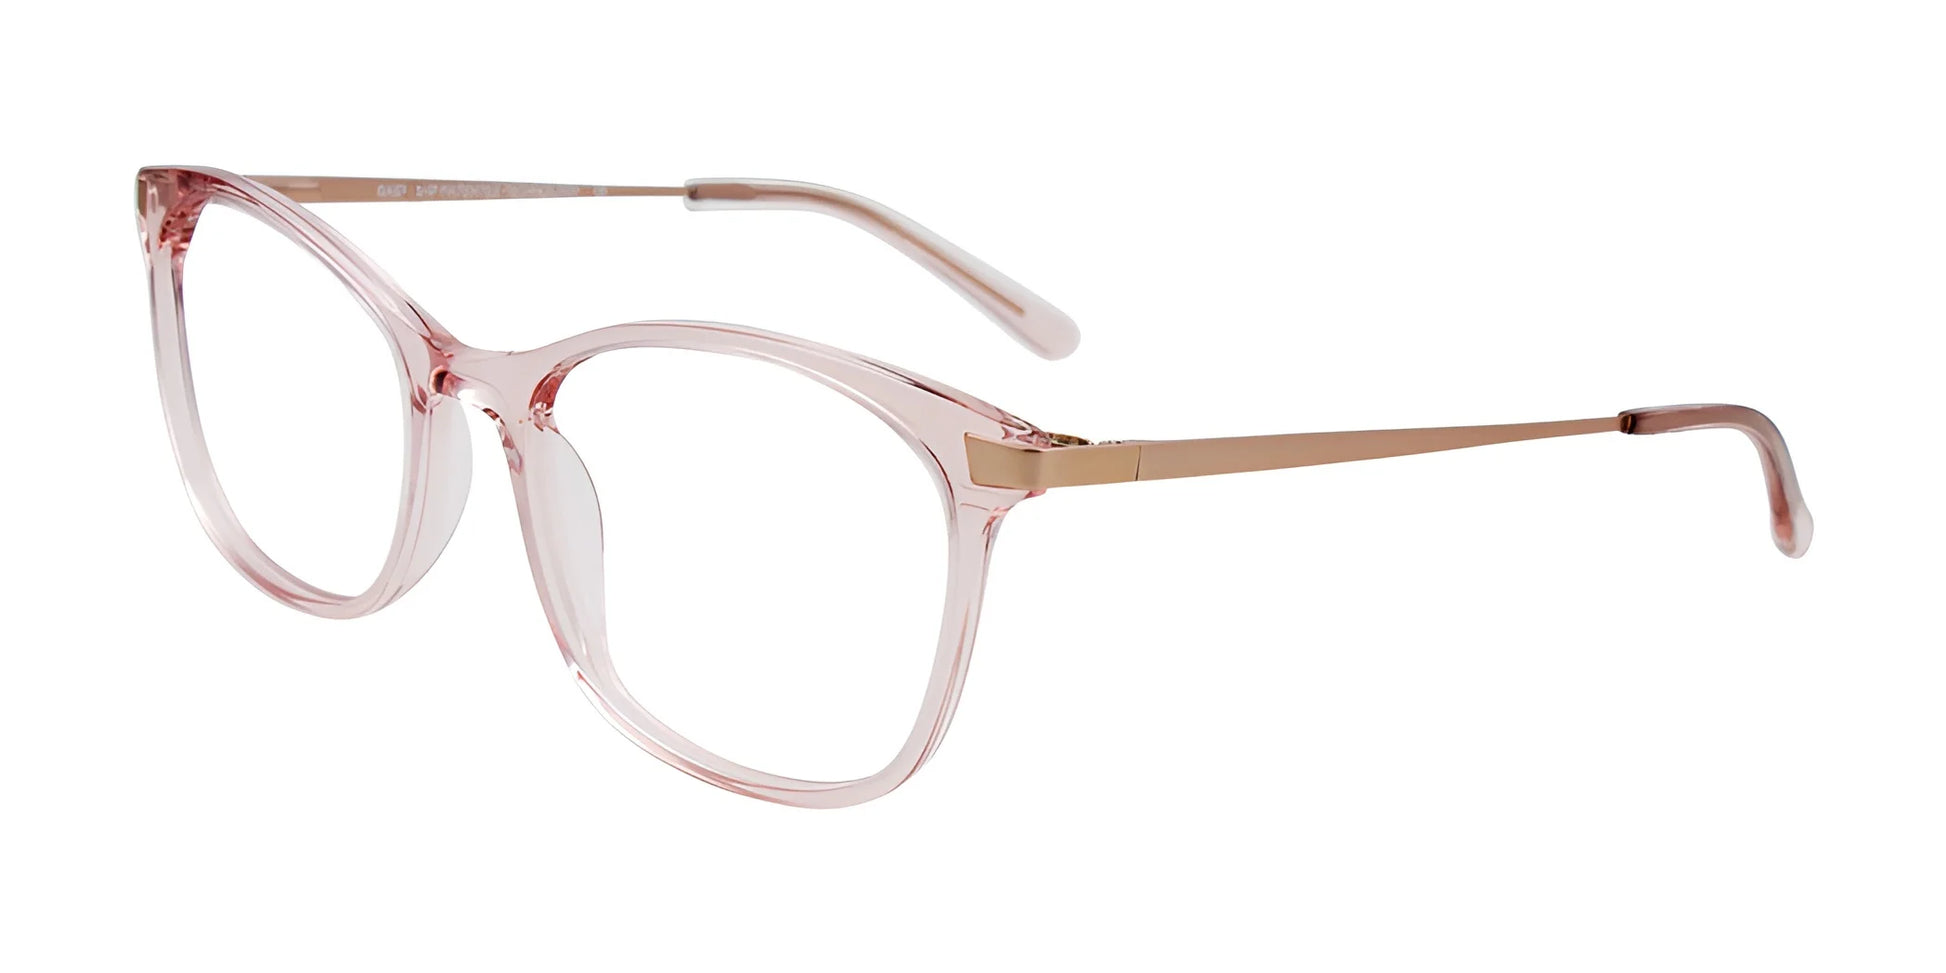 EasyClip EC583 Eyeglasses Crys Lit Pink / Satin Pink Gold